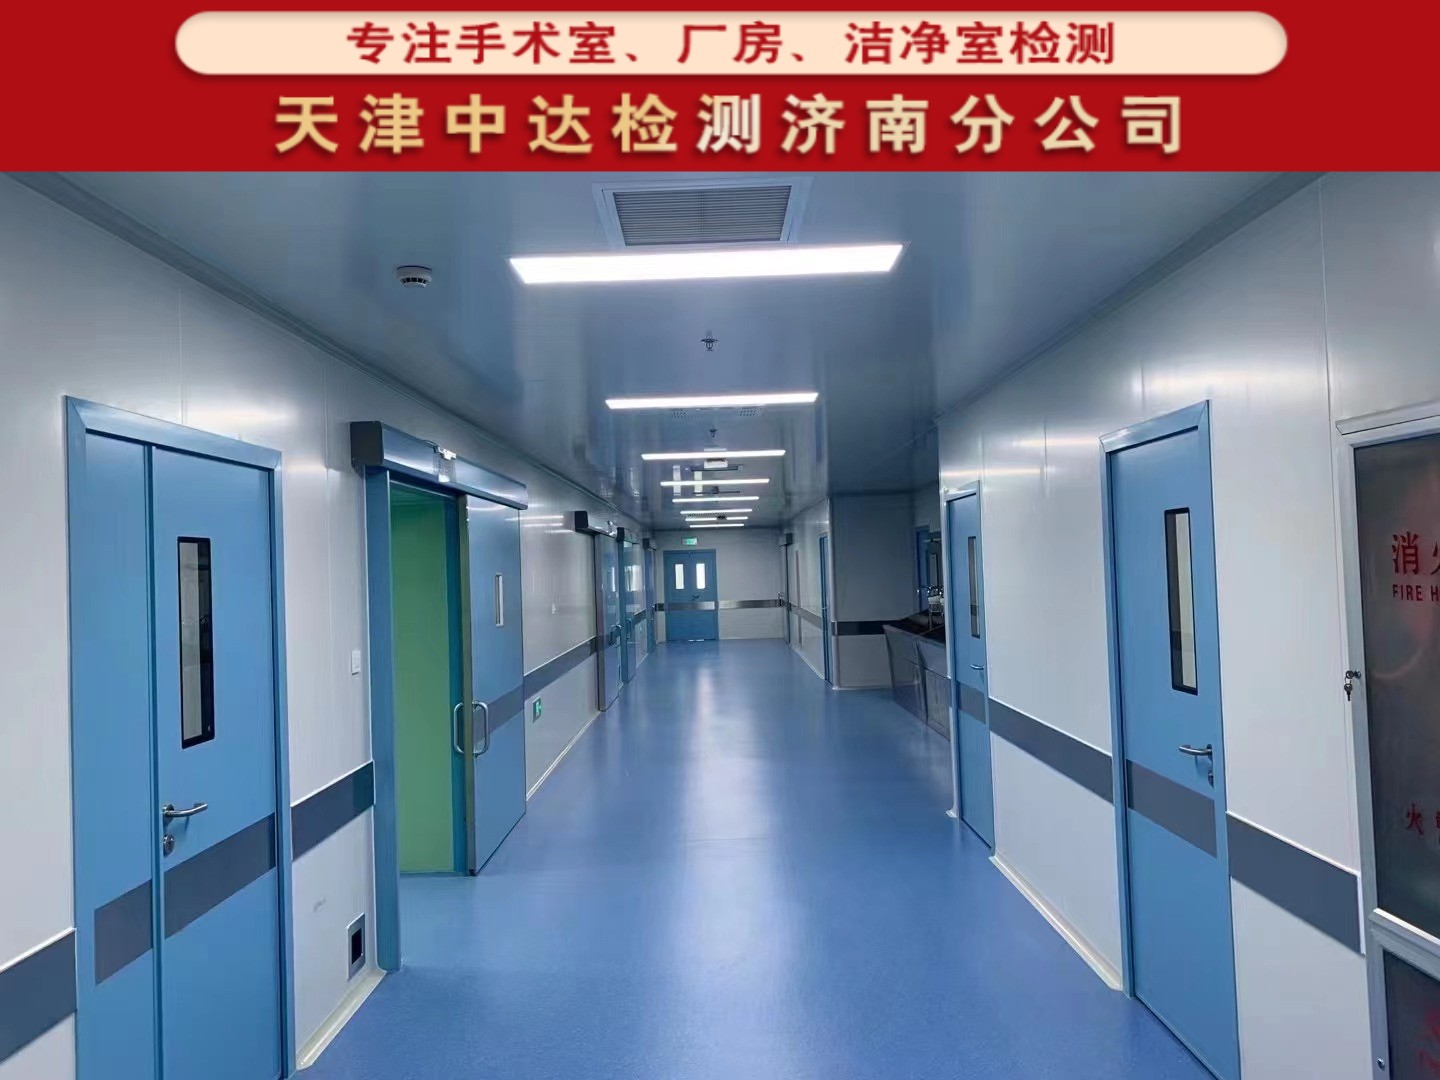 青岛胶州市医院洁净手术室环境检测第三方-天津中达检测济南分公司